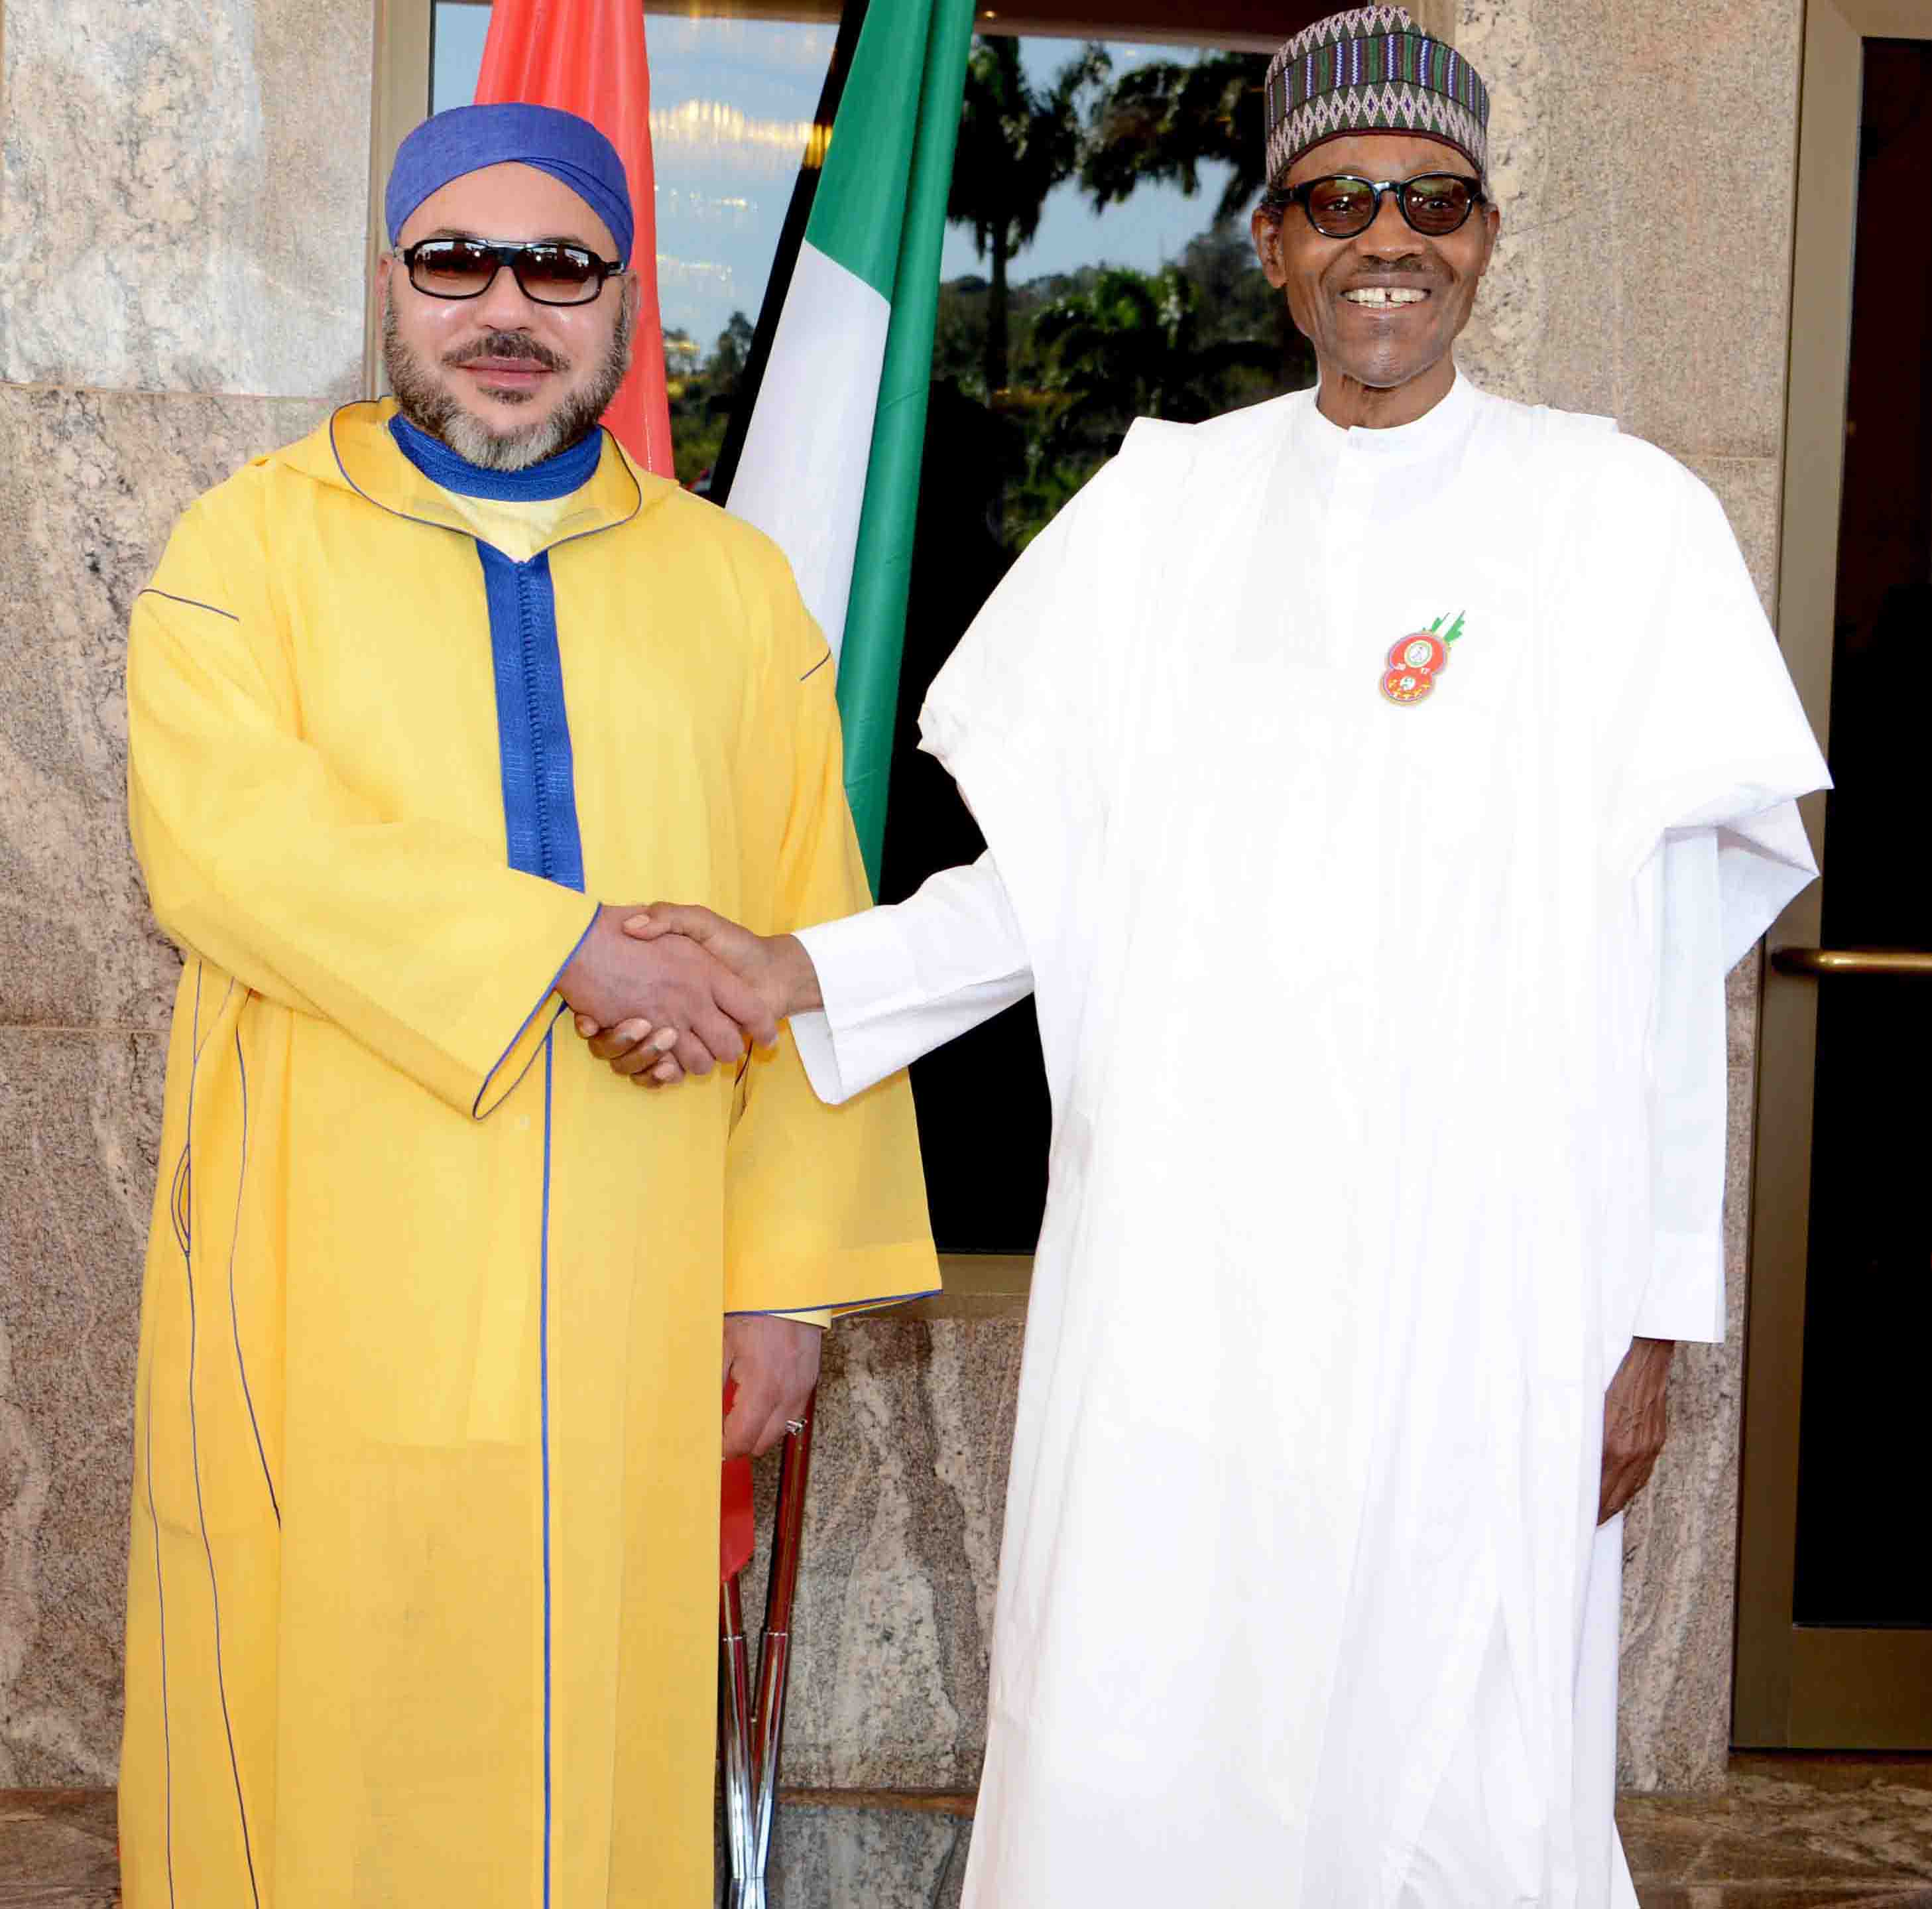 entretiens_a_abuja_entre_sm_le_roi_et_le_president_nigerian-g-2